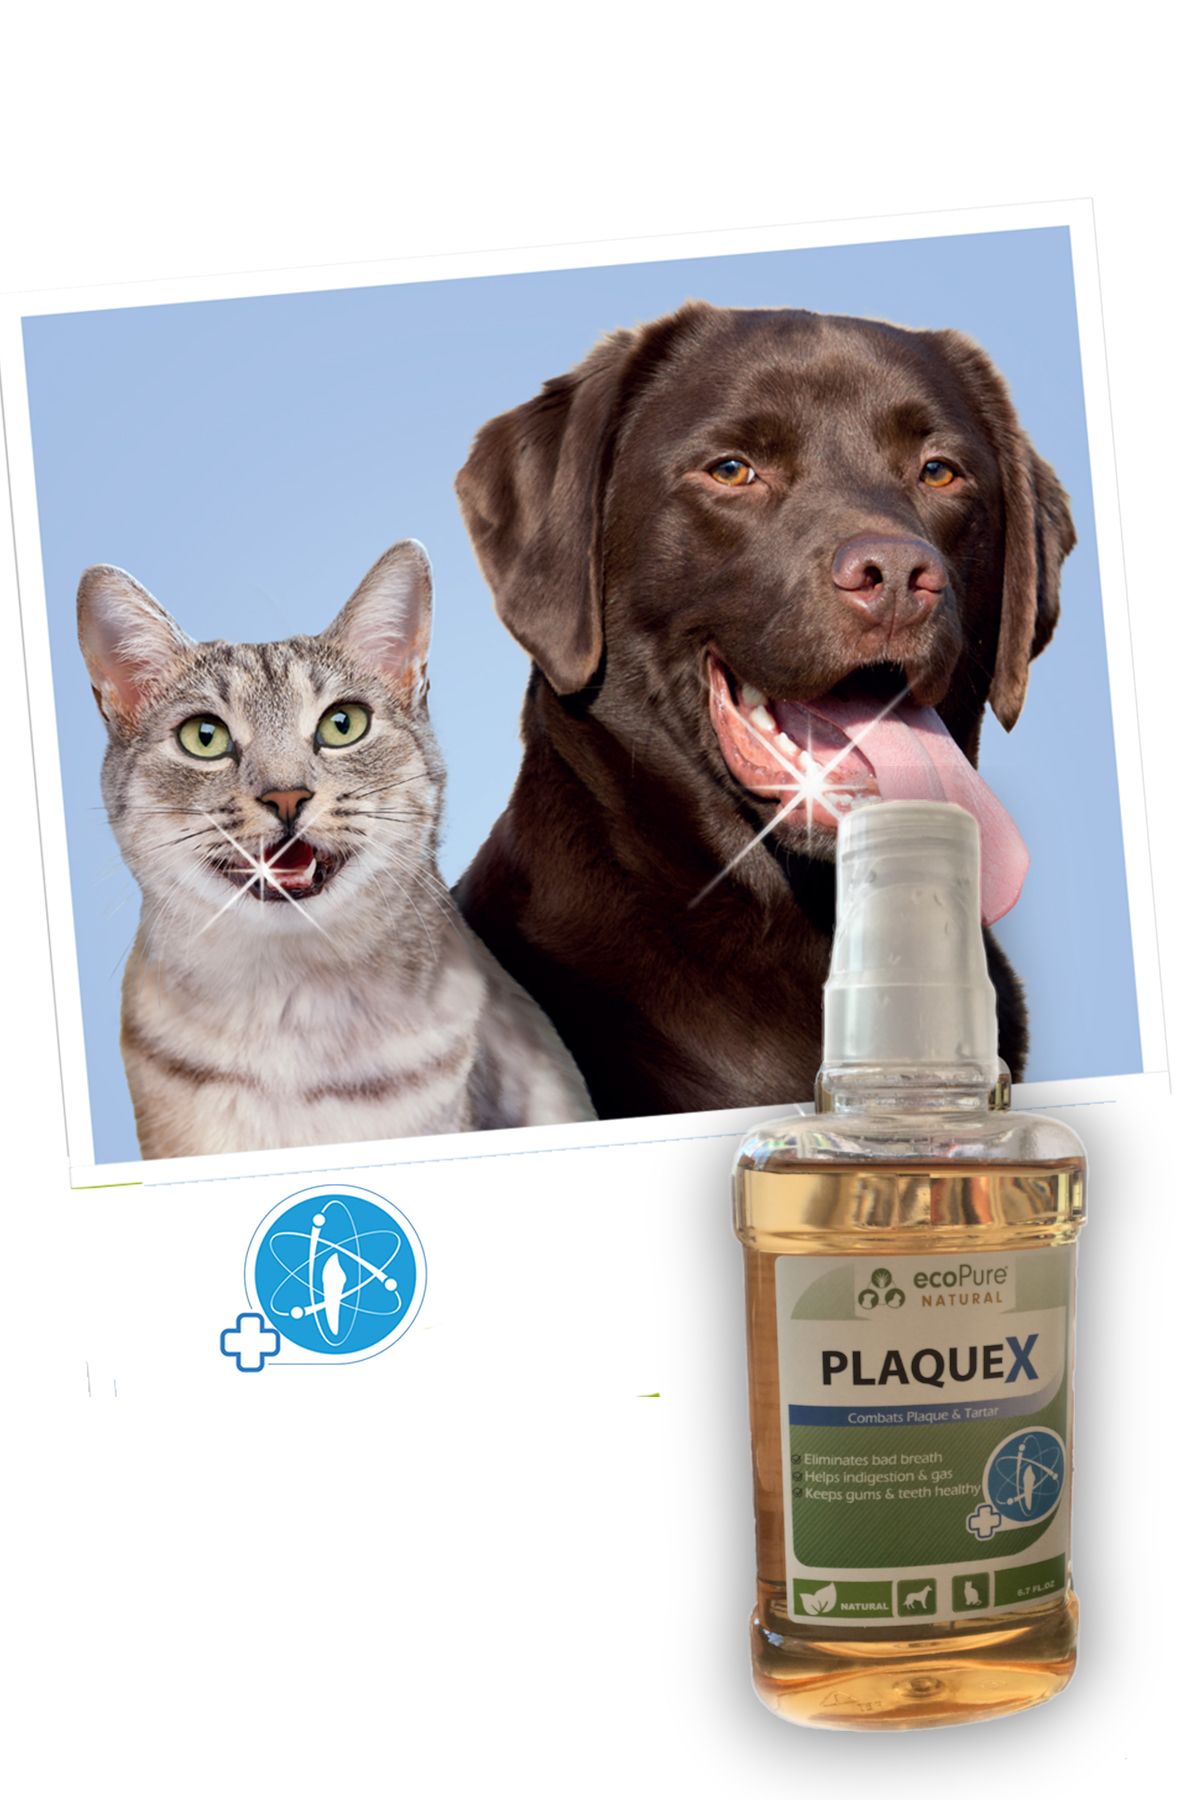 Ecopure Plaquex Kedi Köpek Tartar & Plak Engelleyici (ağız Kokusu Giderici) Ağız Bakım Solüsyonu